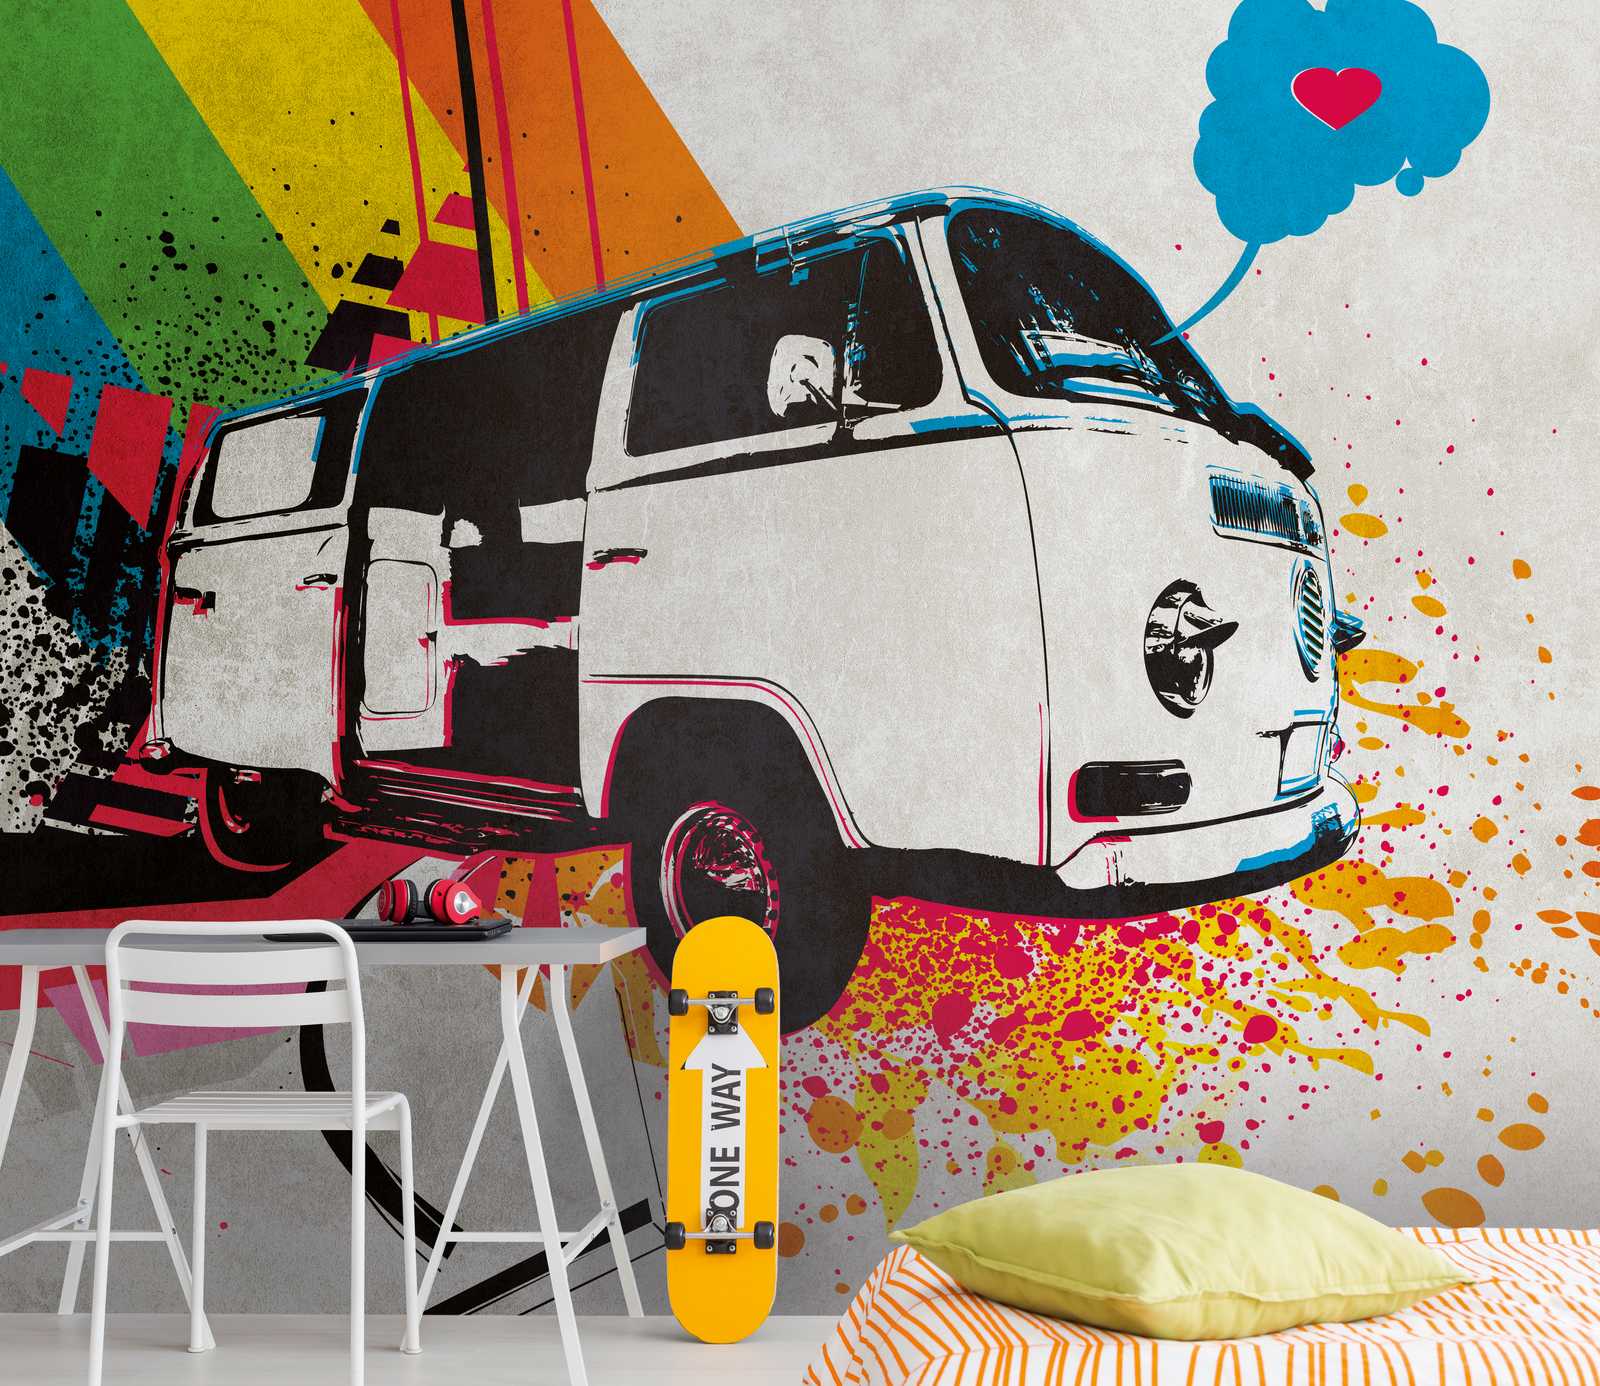             Papeles pintados novedad | papel pintado motivo habitación juvenil arte graffiti bulli
        